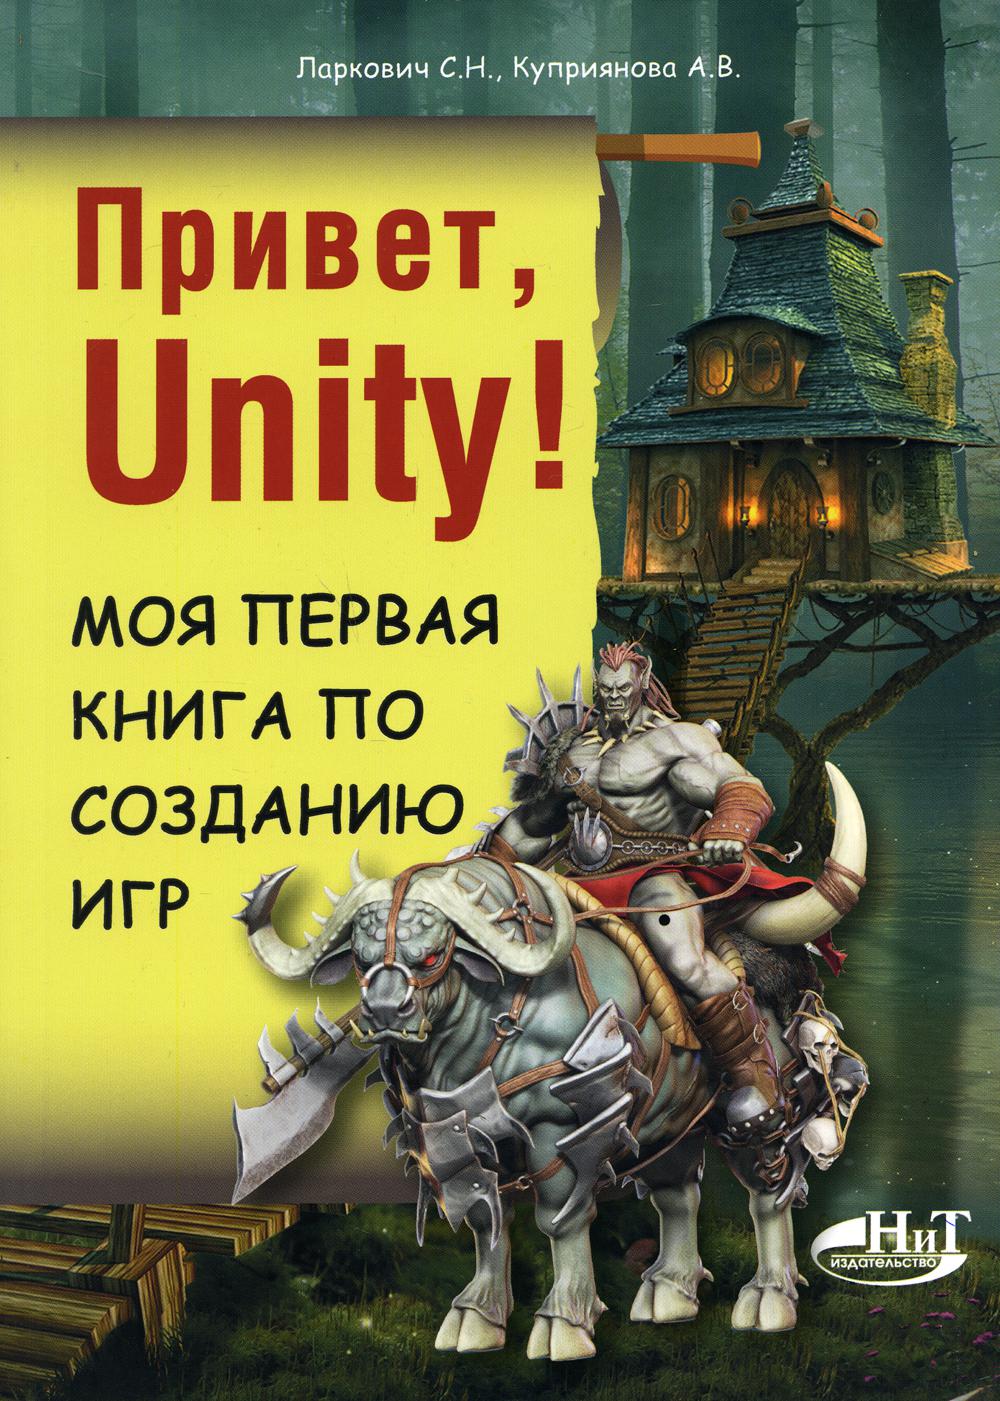 фото Книга привет, unity! моя первая книга по созданию игр наука и техника